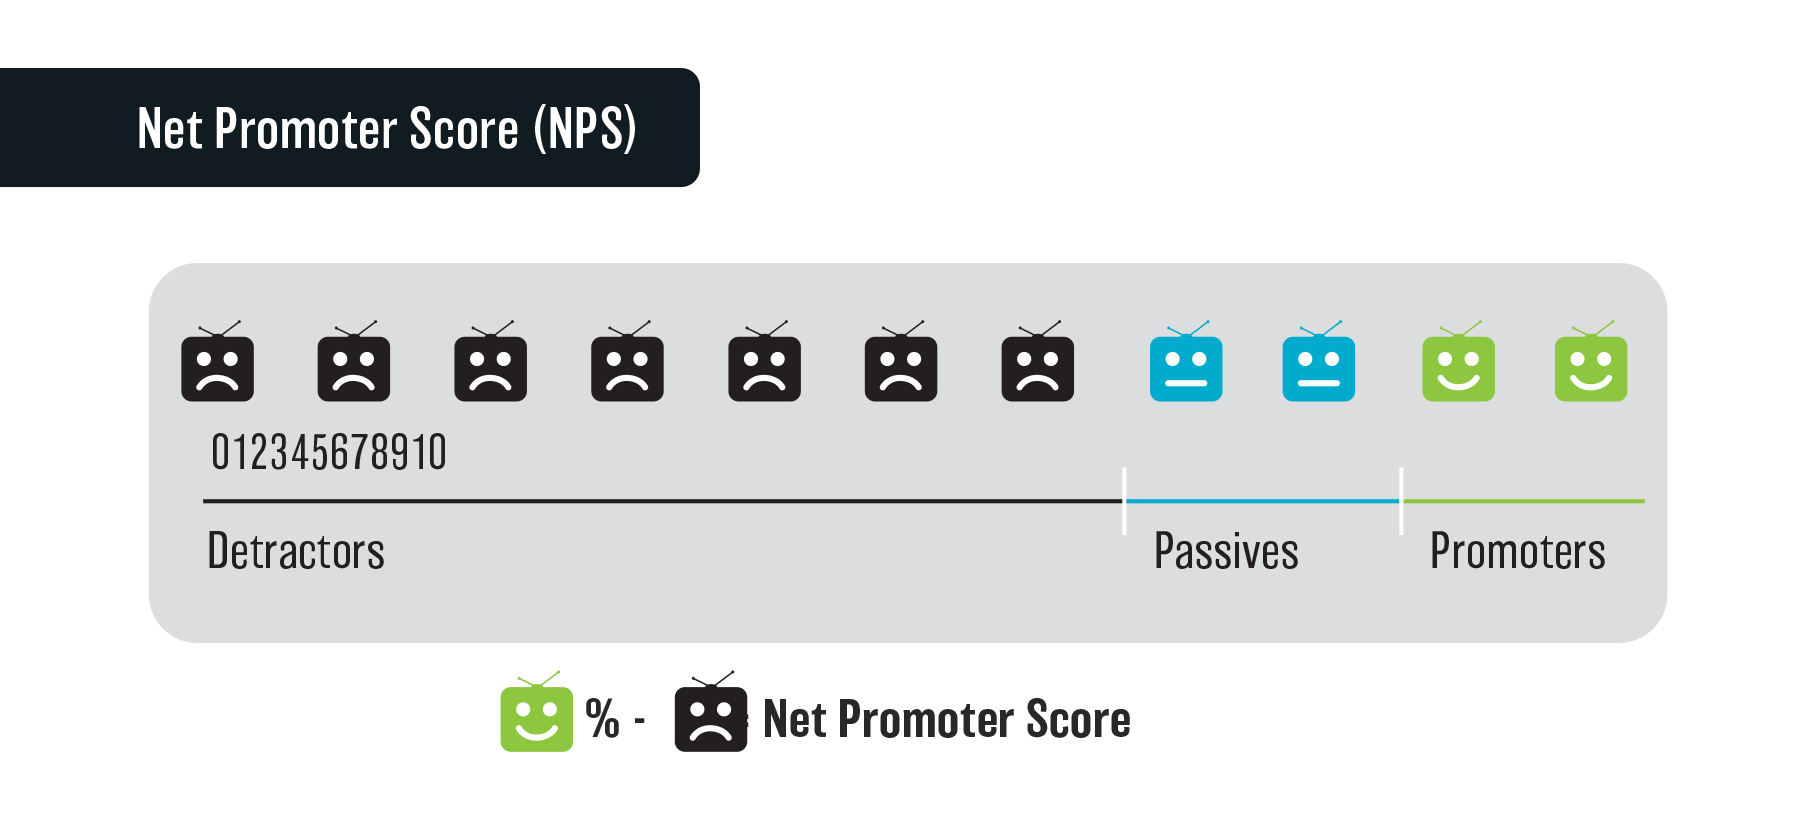 Figure 7.3: Net Promoter Score (NPS)